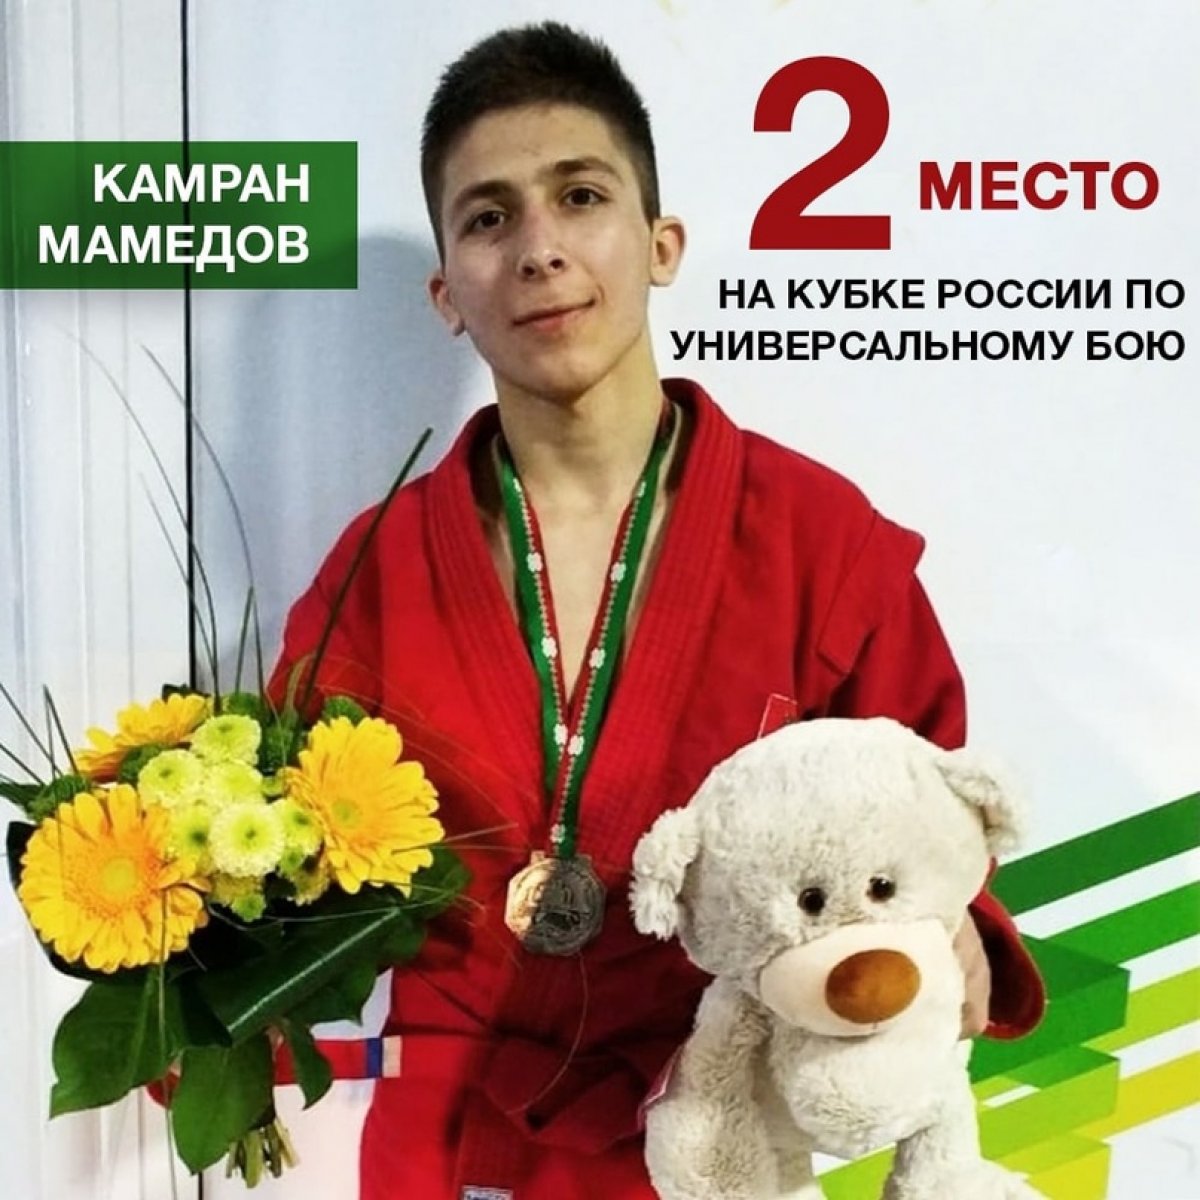 Студент 1️⃣ курса факультета физической культуры Камран Мамедов занял 2️⃣ место на Кубке России по универсальному бою 🥊